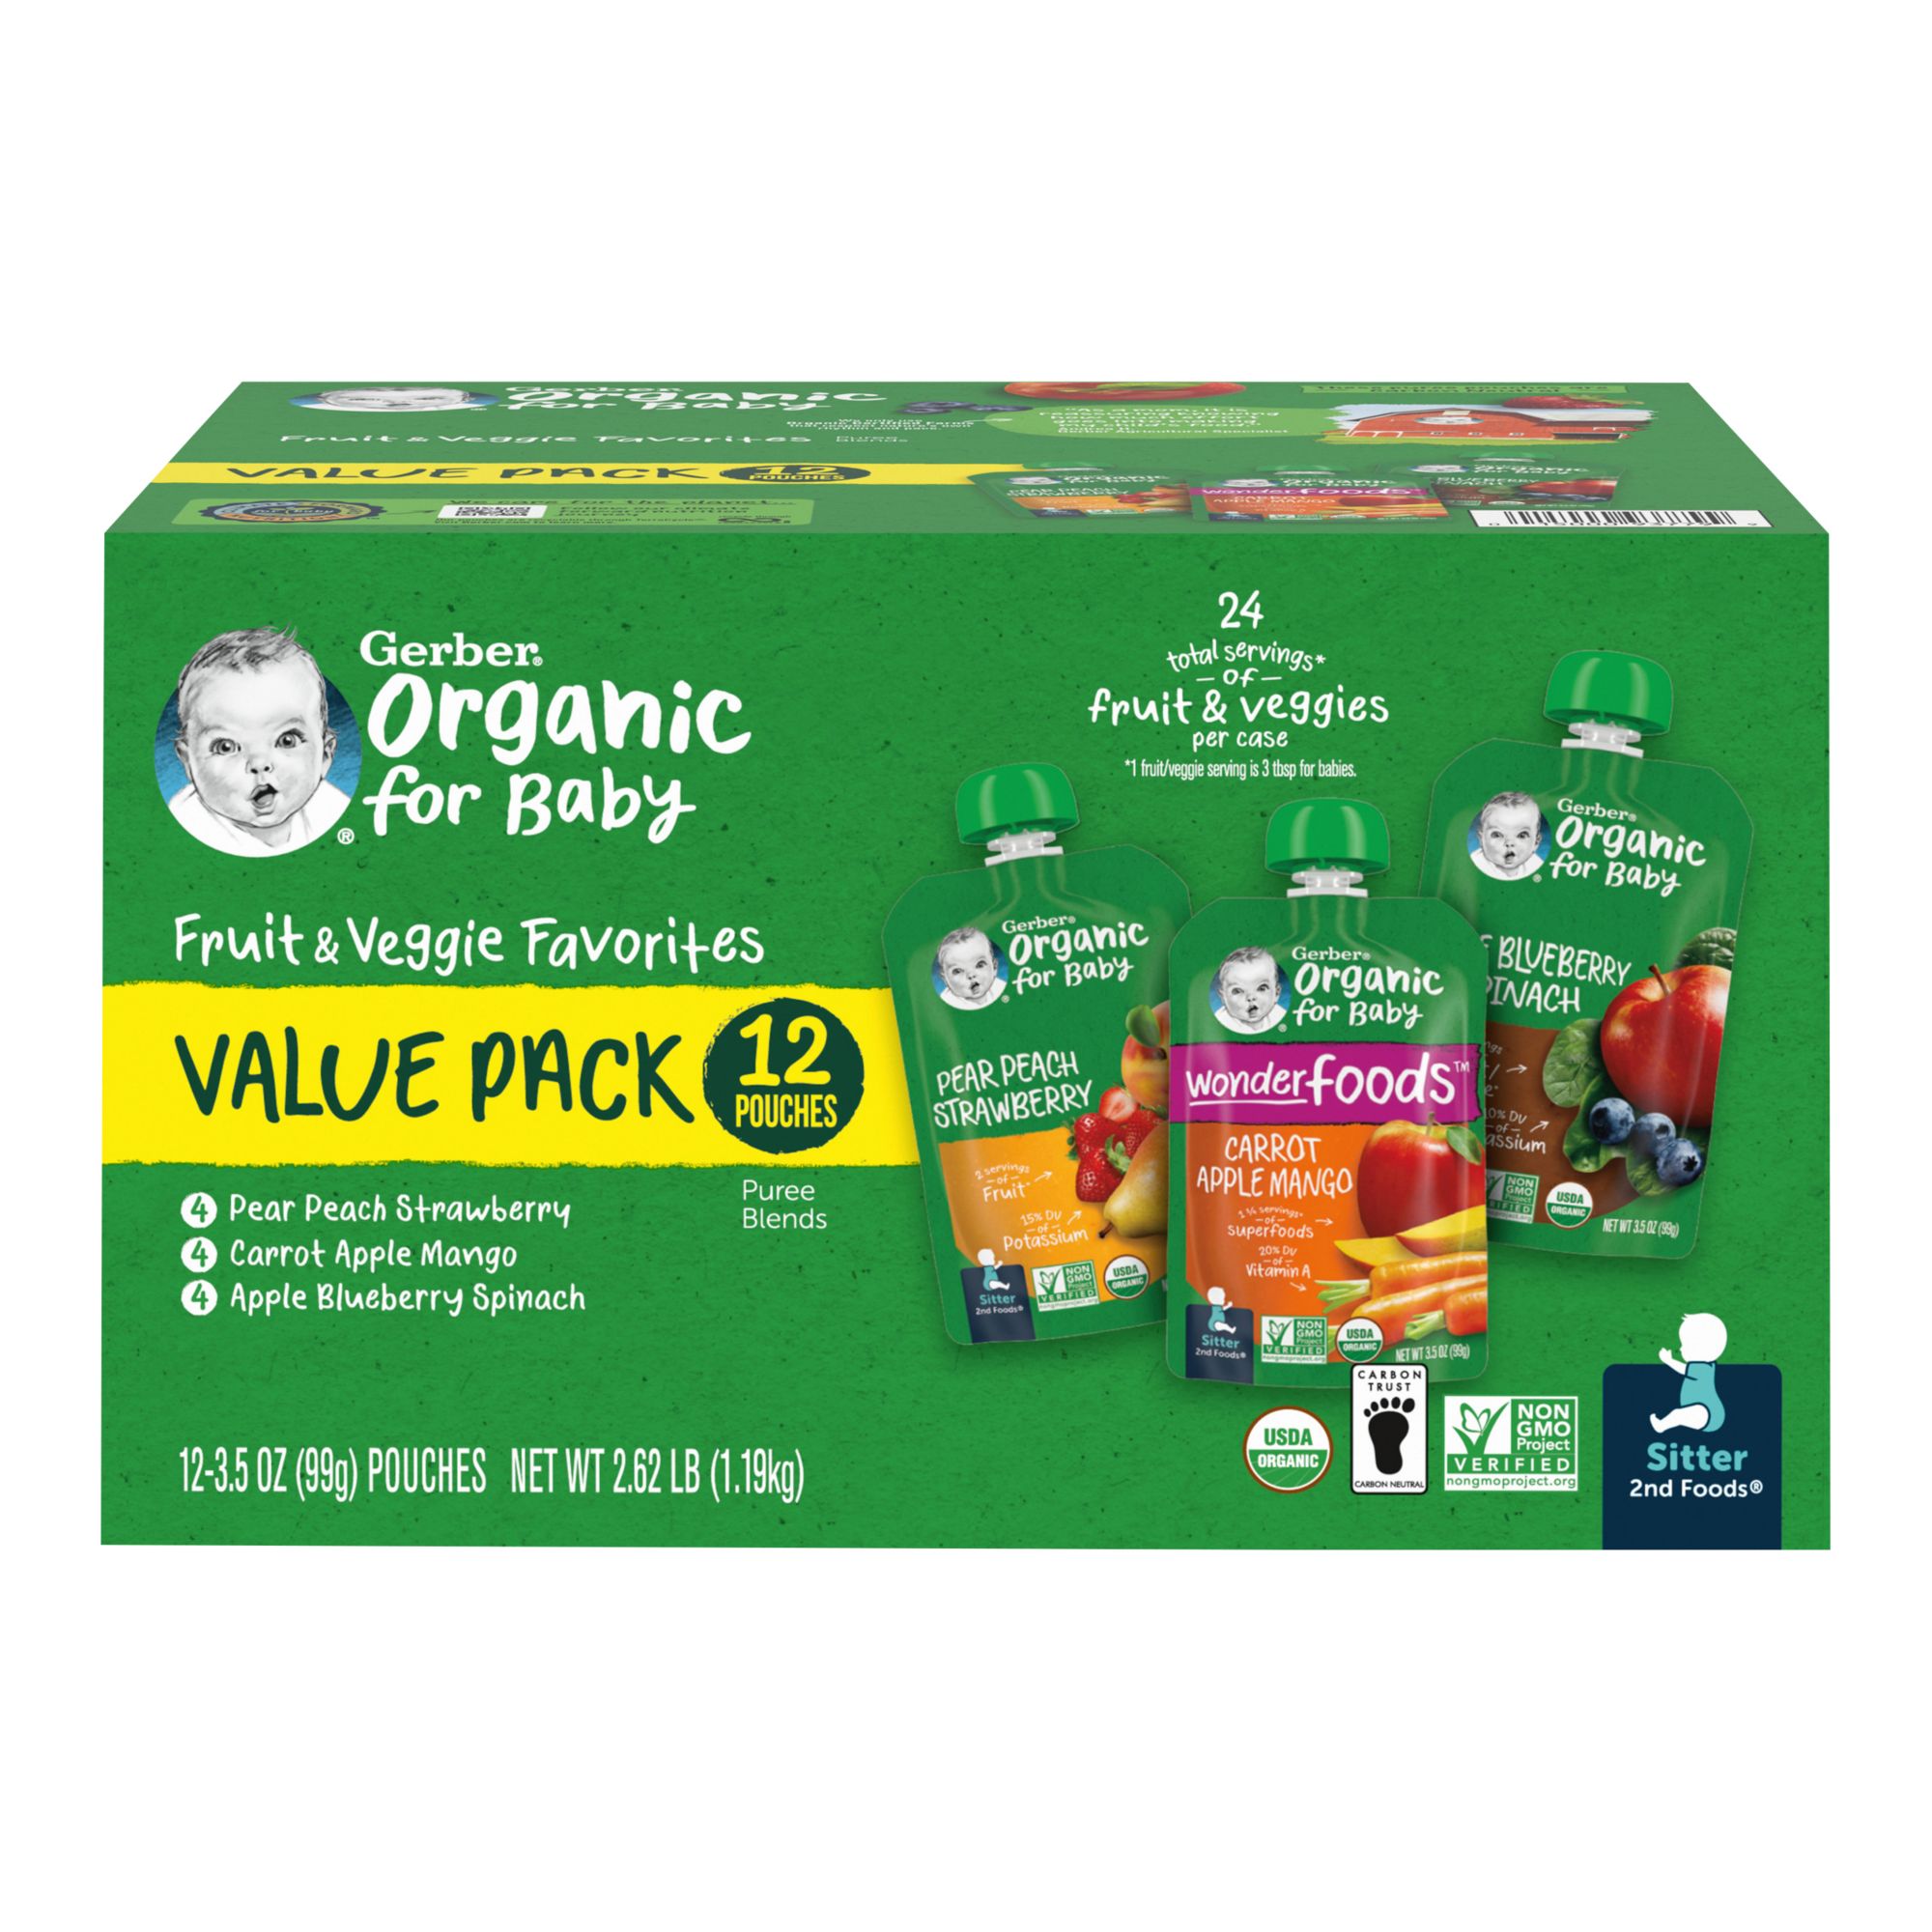 Organic Fruit & Veggie Wash, 16 fl oz at Whole Foods Market